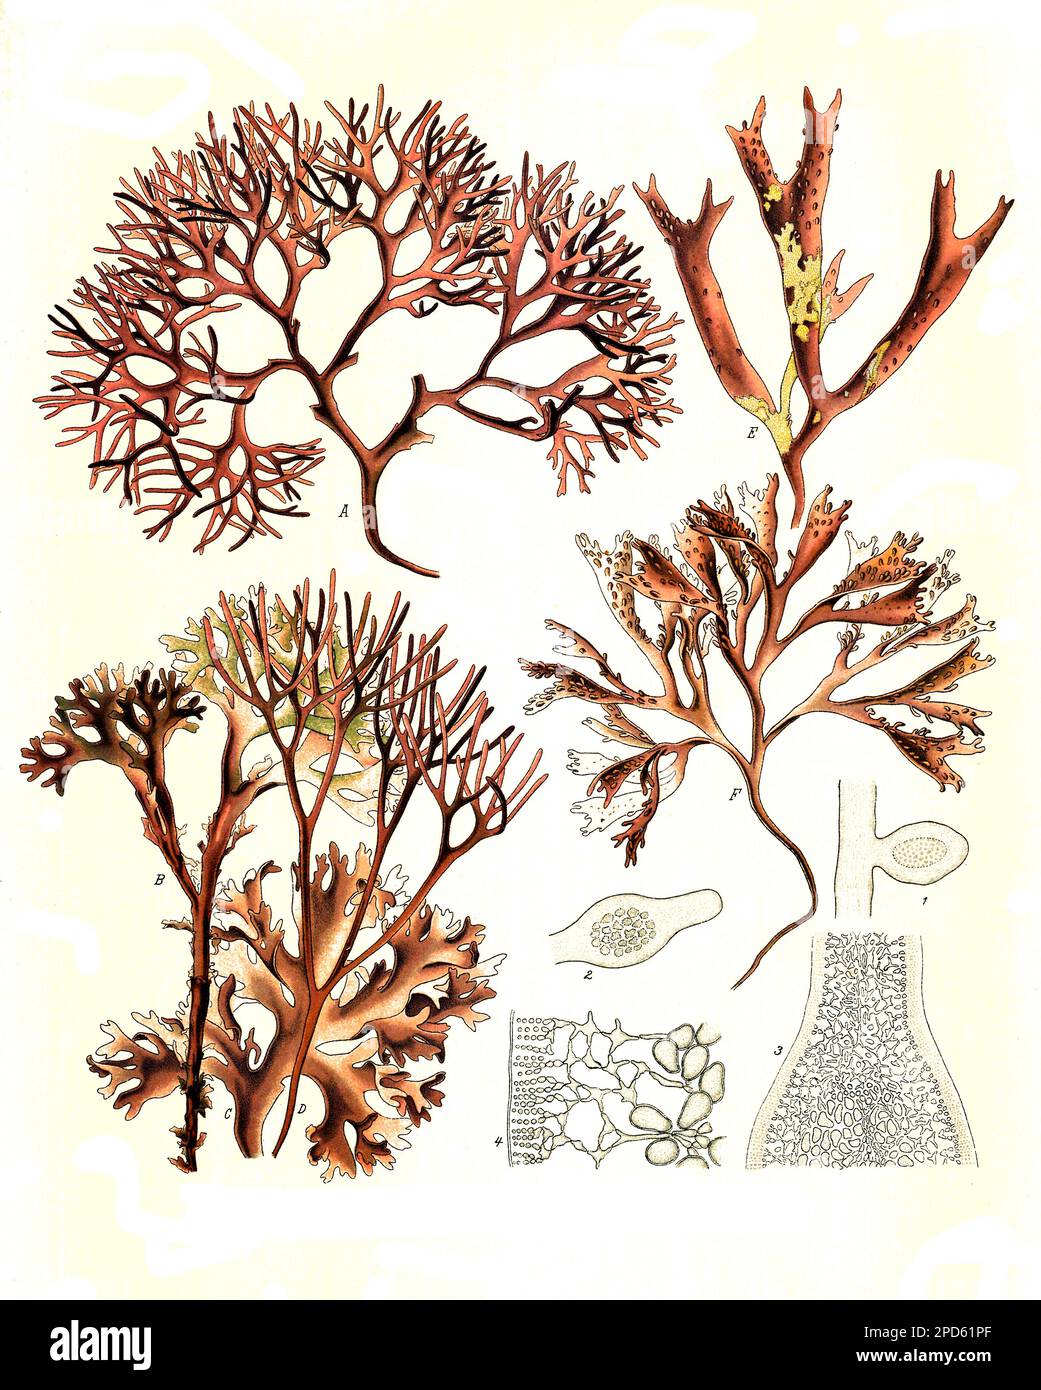 Heilpflanze, Gemeiner Knorpeltang, Chondrus crispus, auch als Knorpelmoos, Irisch Moos bzw. Irländisches Moos,, irländisches Perlmoos oder Carragheen-Alge oder -Moos benannt, ist eine Rotalge der nordatlantischen Küsten, die auch in der Nordsee und Ostsee vorkommt und Kraussterntang oder auch Nadeltang, Mastocarpus stellatus, Historisch, digital restaurierte Reproduktion von einer Vorlage aus dem 19. Jahrhundert, Stock Photo